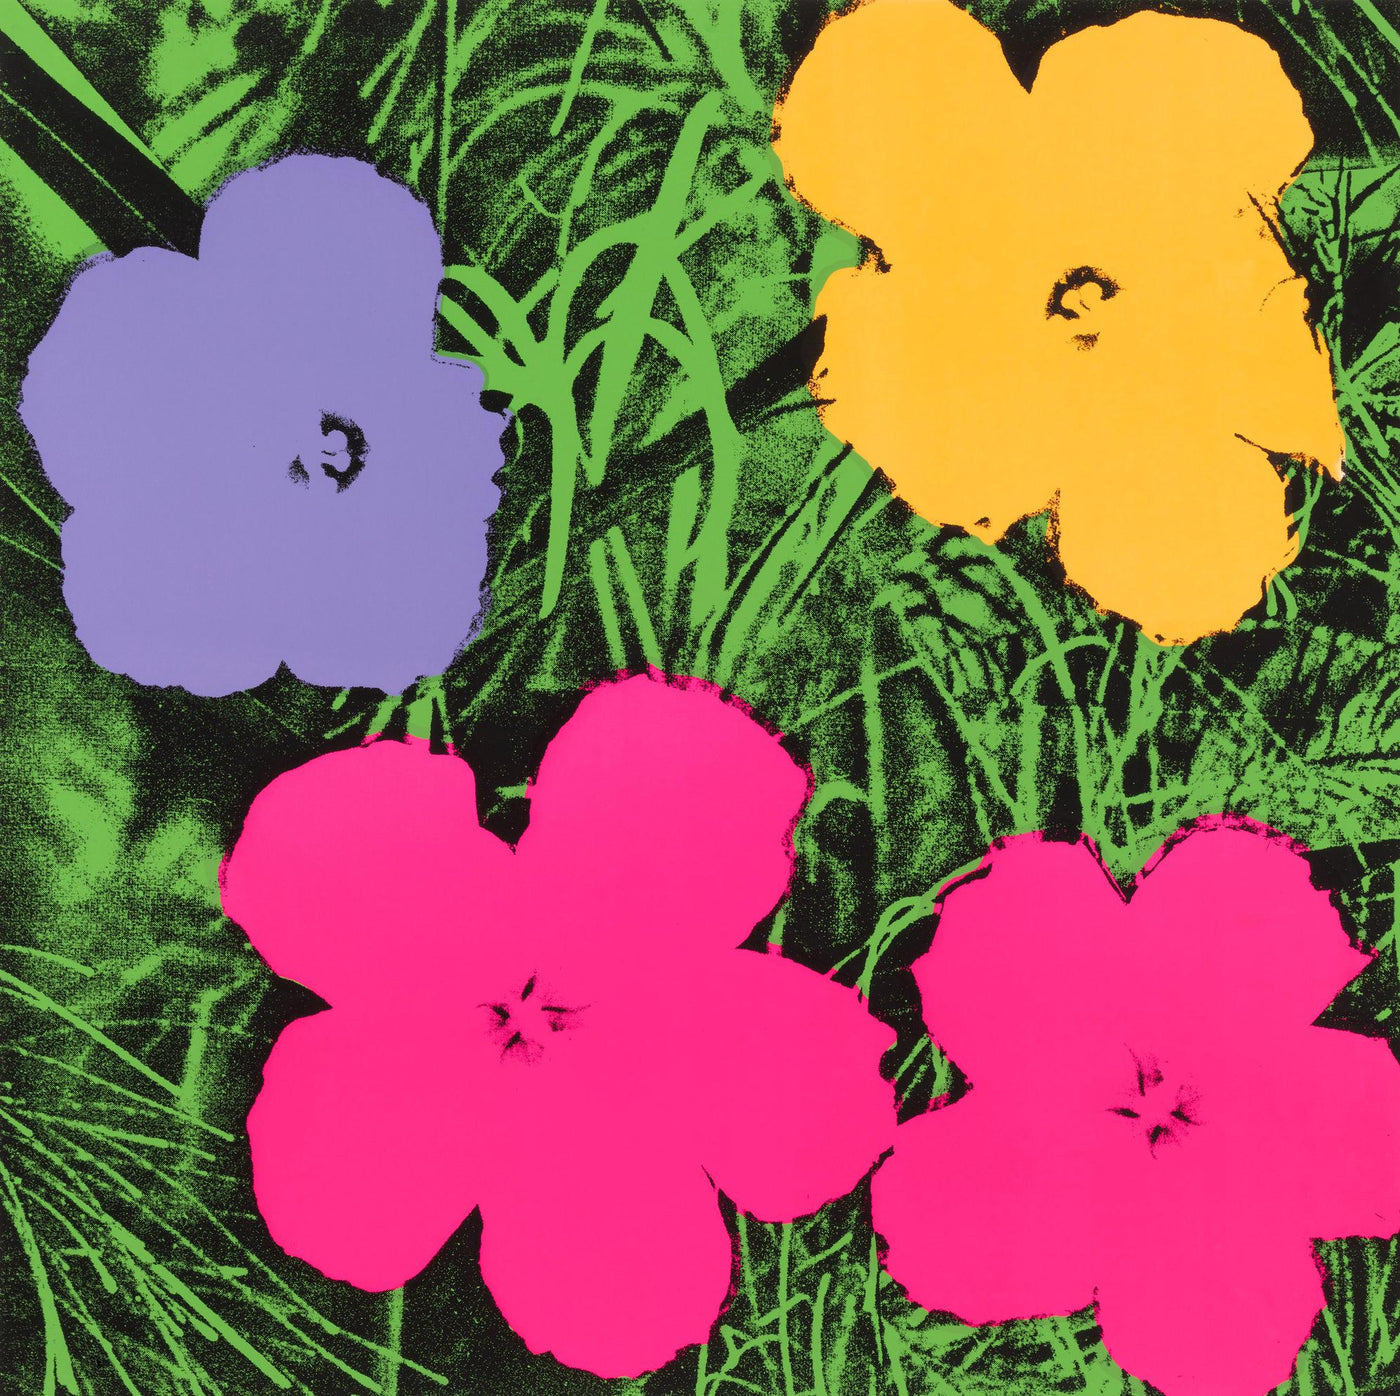 Andy Warhol Flowers (Feldman II.73) 1970